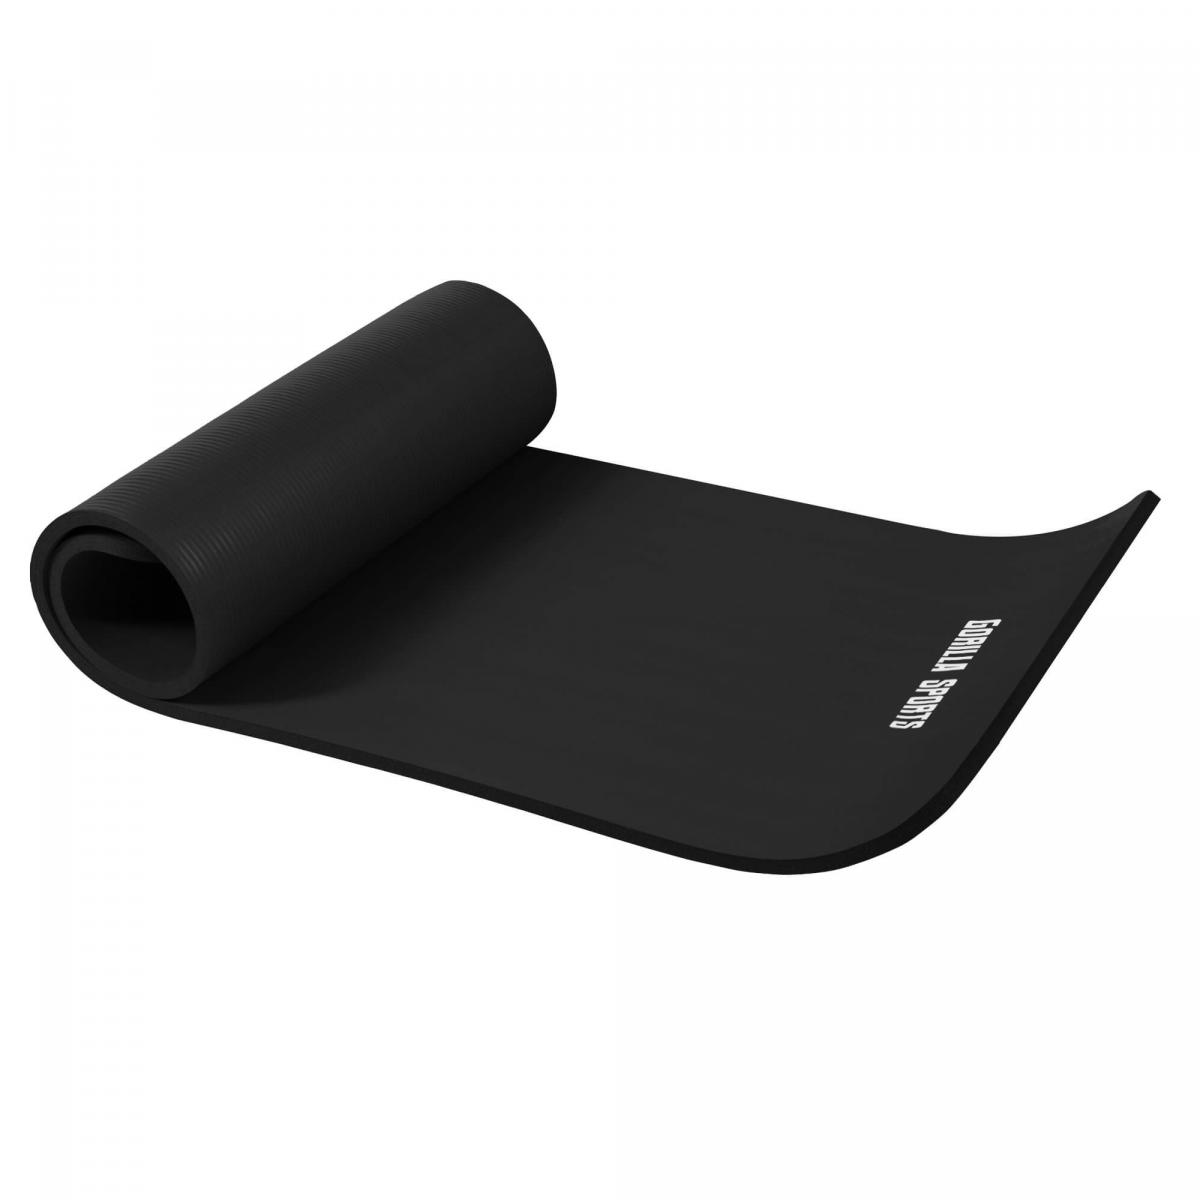 Petit tapis de yoga en mousse - 190 x 60 x 1,5 cm (Yoga - Pilates - sport Ã domicile) Noir